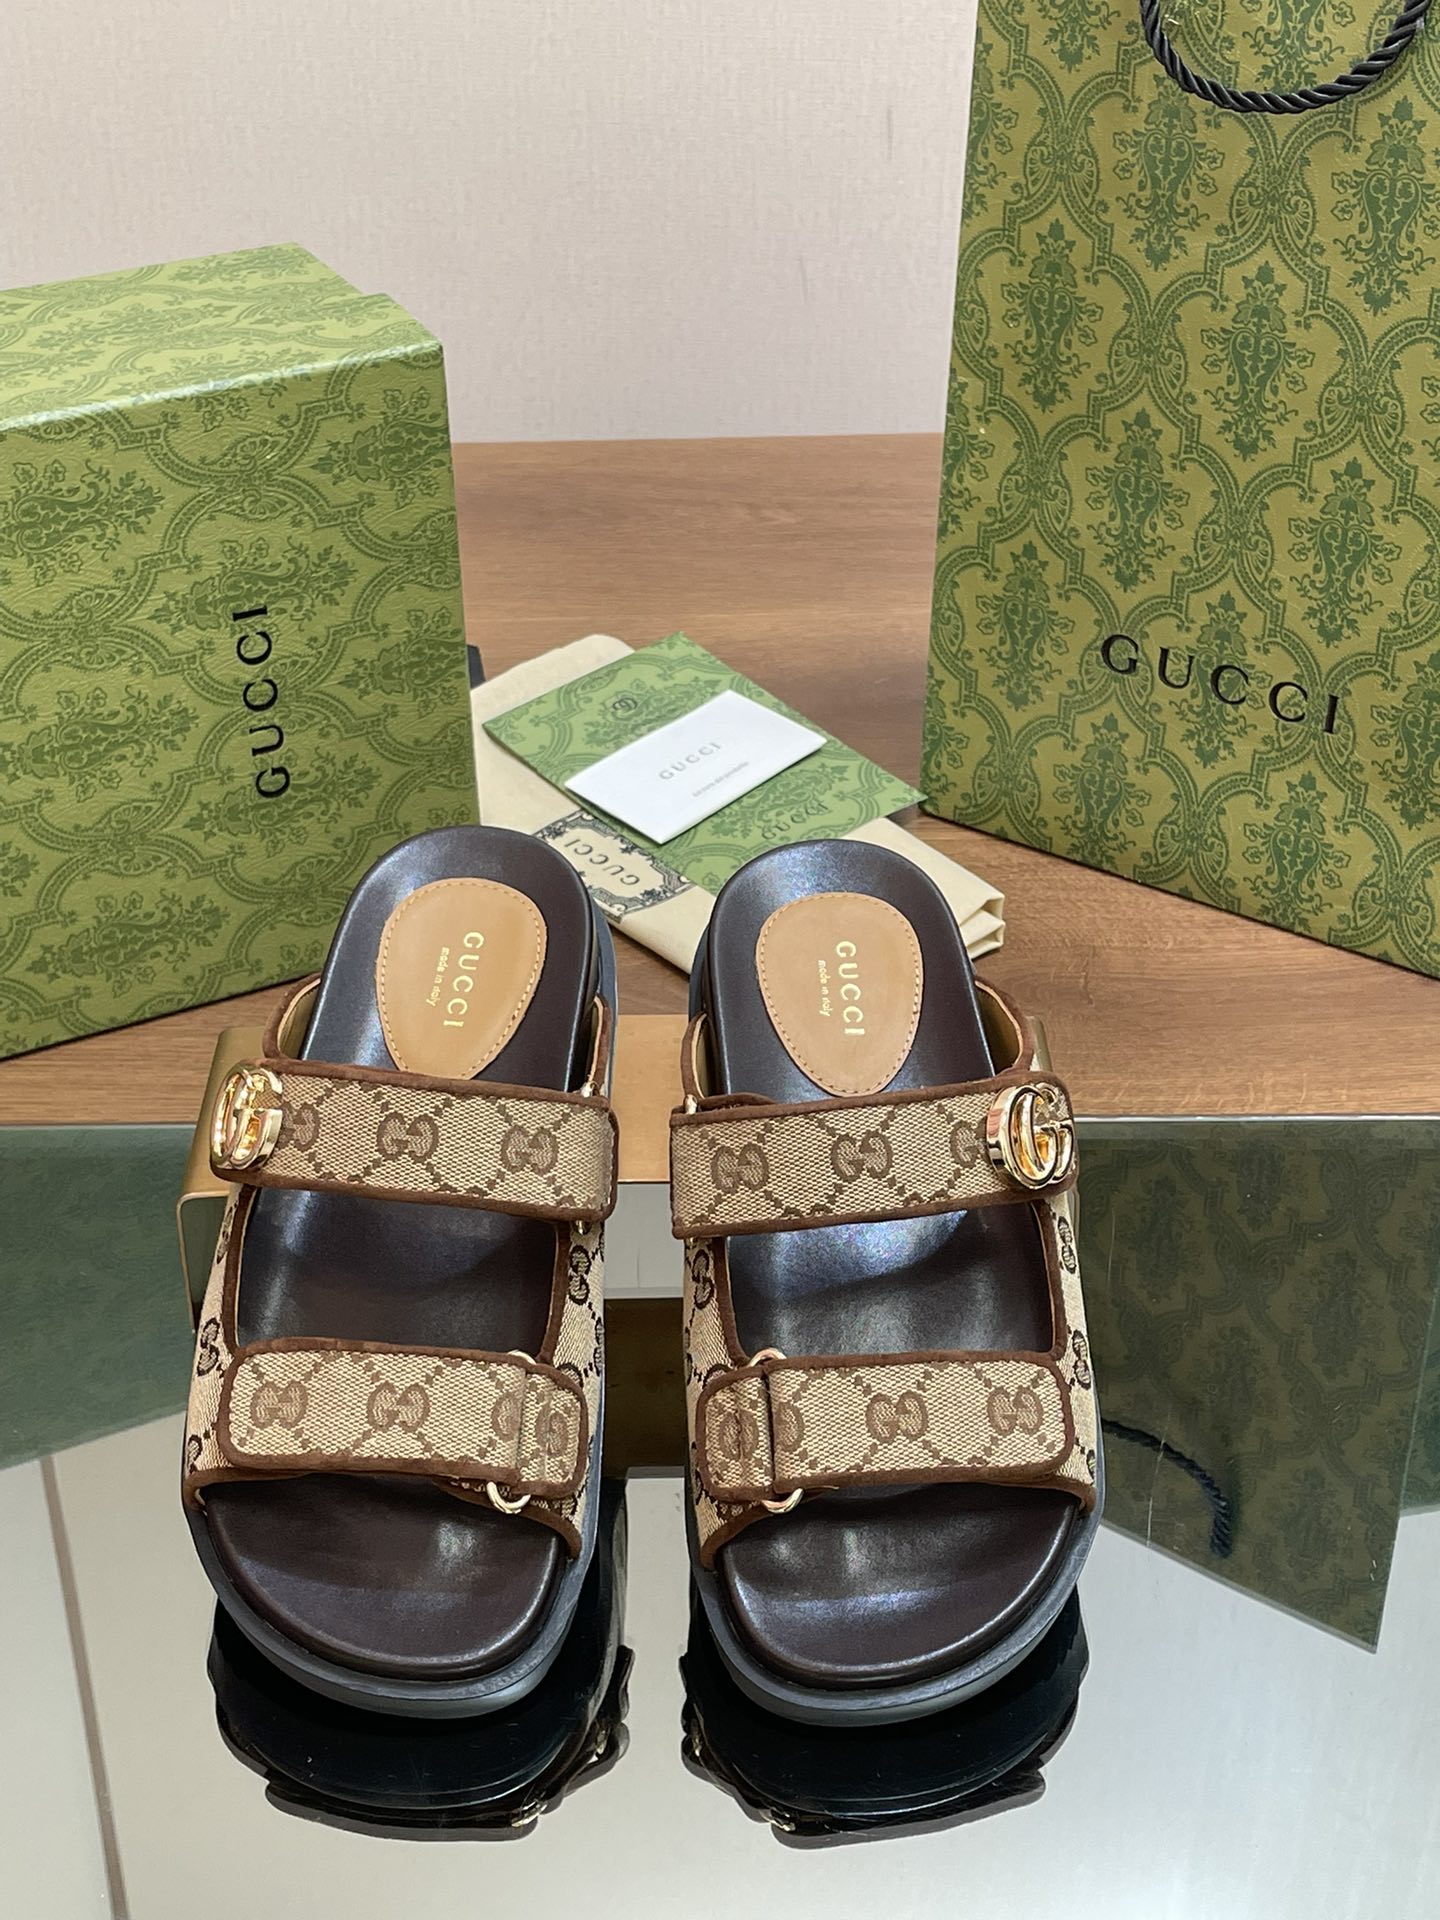 Migliore nuovo stile di replica
 Gucci Impeccabile
 Scarpe Sandali Pantofole Verde Unisex Denim Tessuto Pizzo Gomma Pelle pecora Collezione Primavera Spiaggia